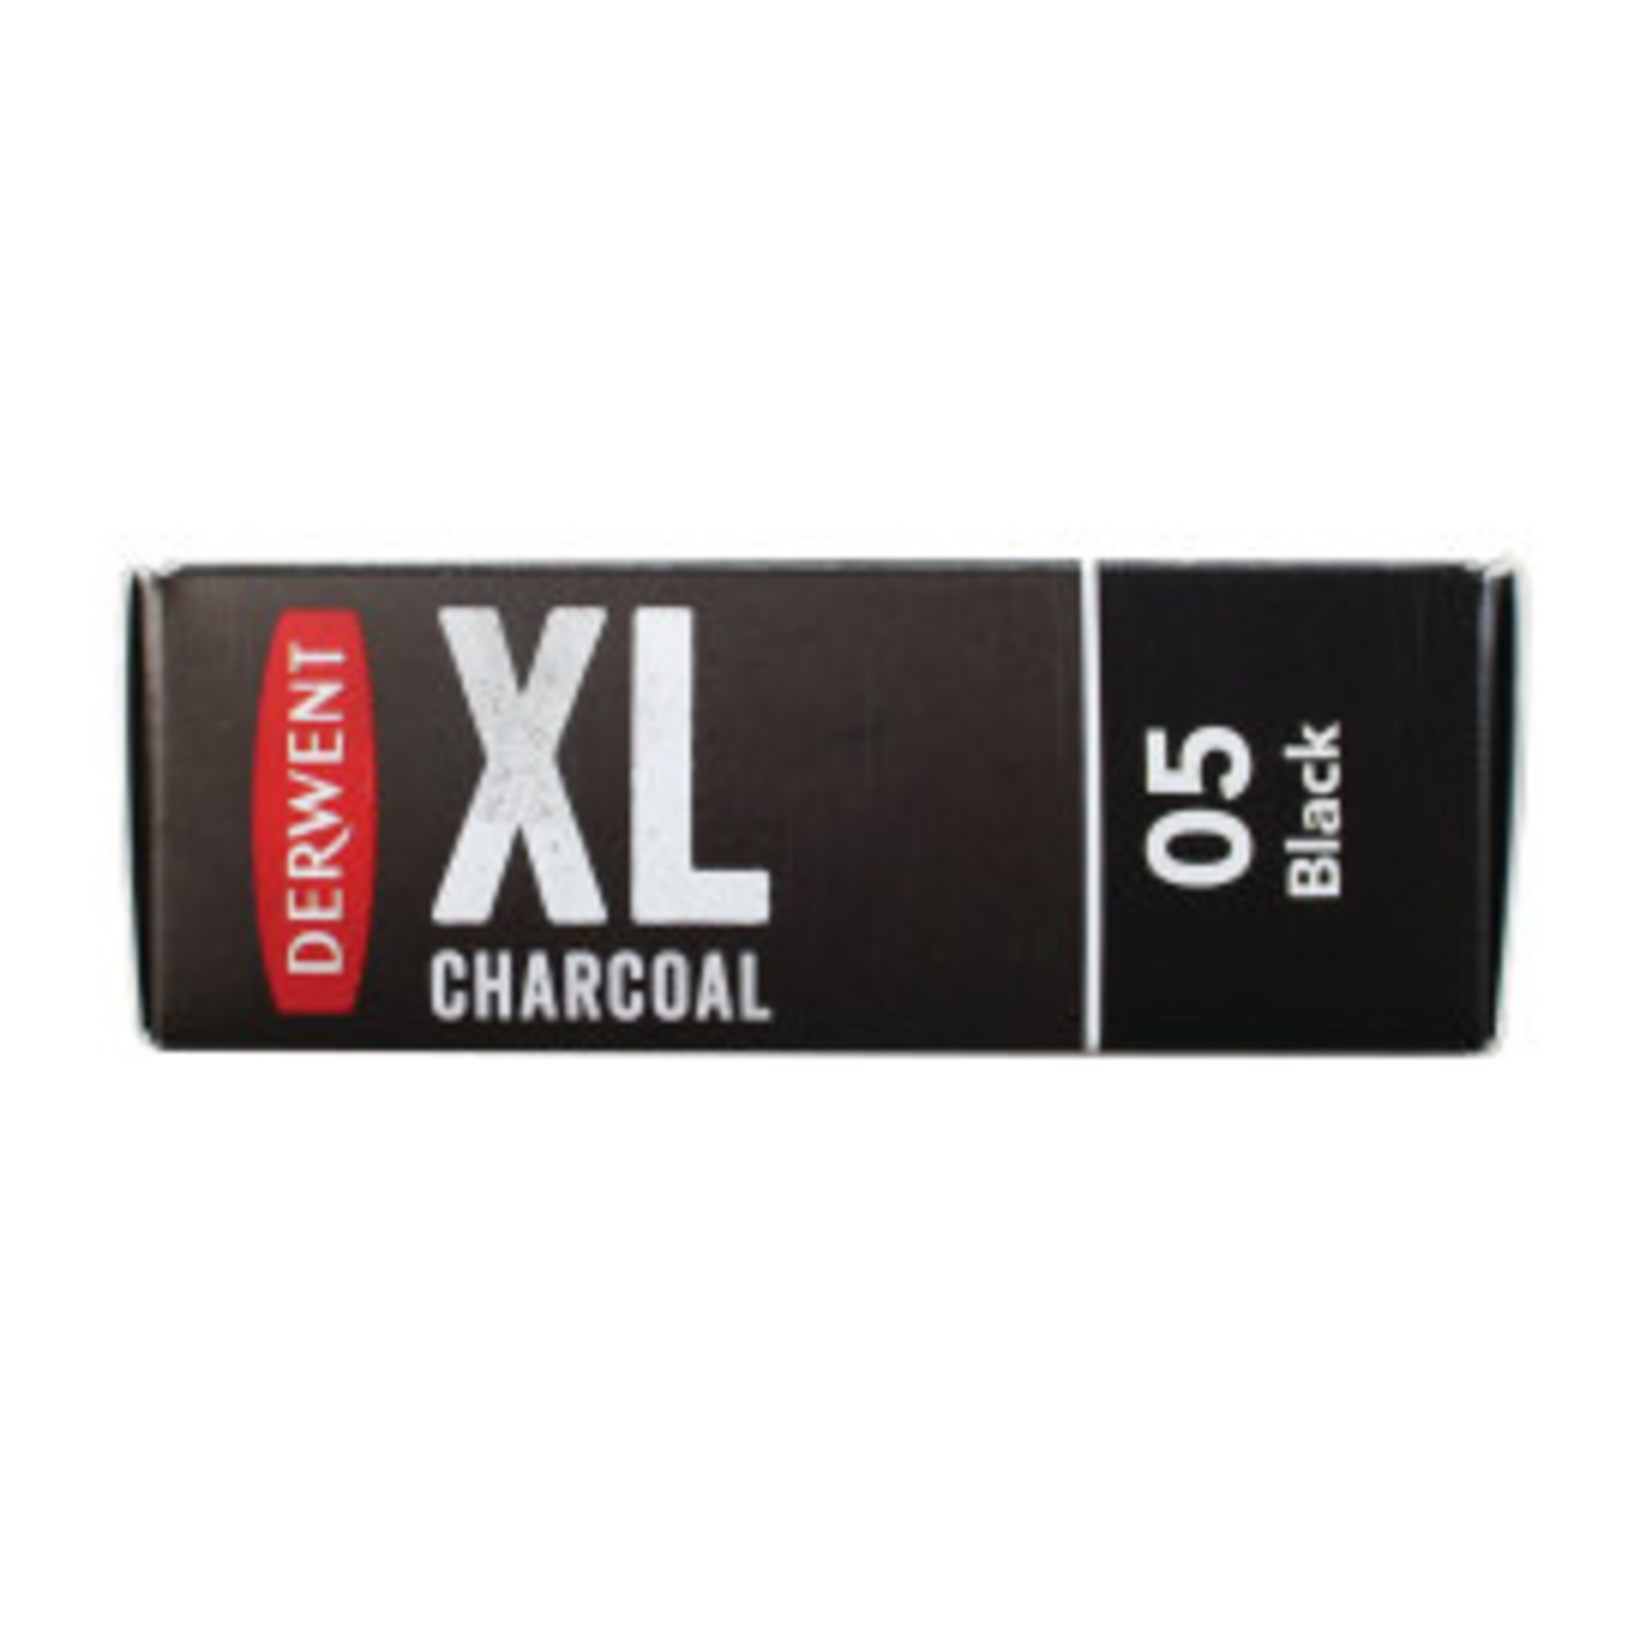 DERWENT DERWENT XL CHARCOAL 05 BLACK